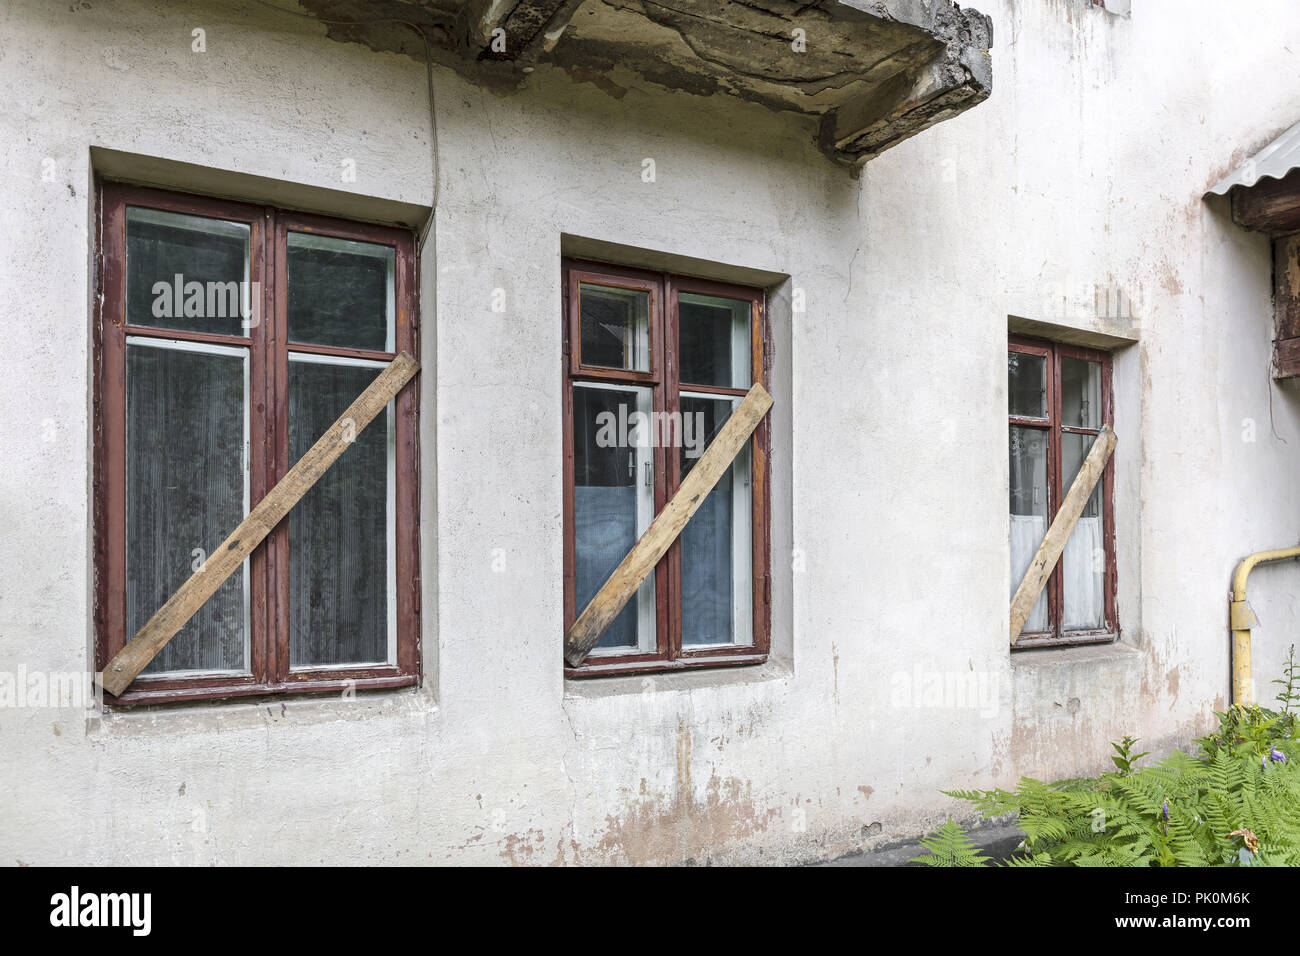 Vieux Mur de stuc blanc maison abandonnée avec barricadèrent windows Banque D'Images